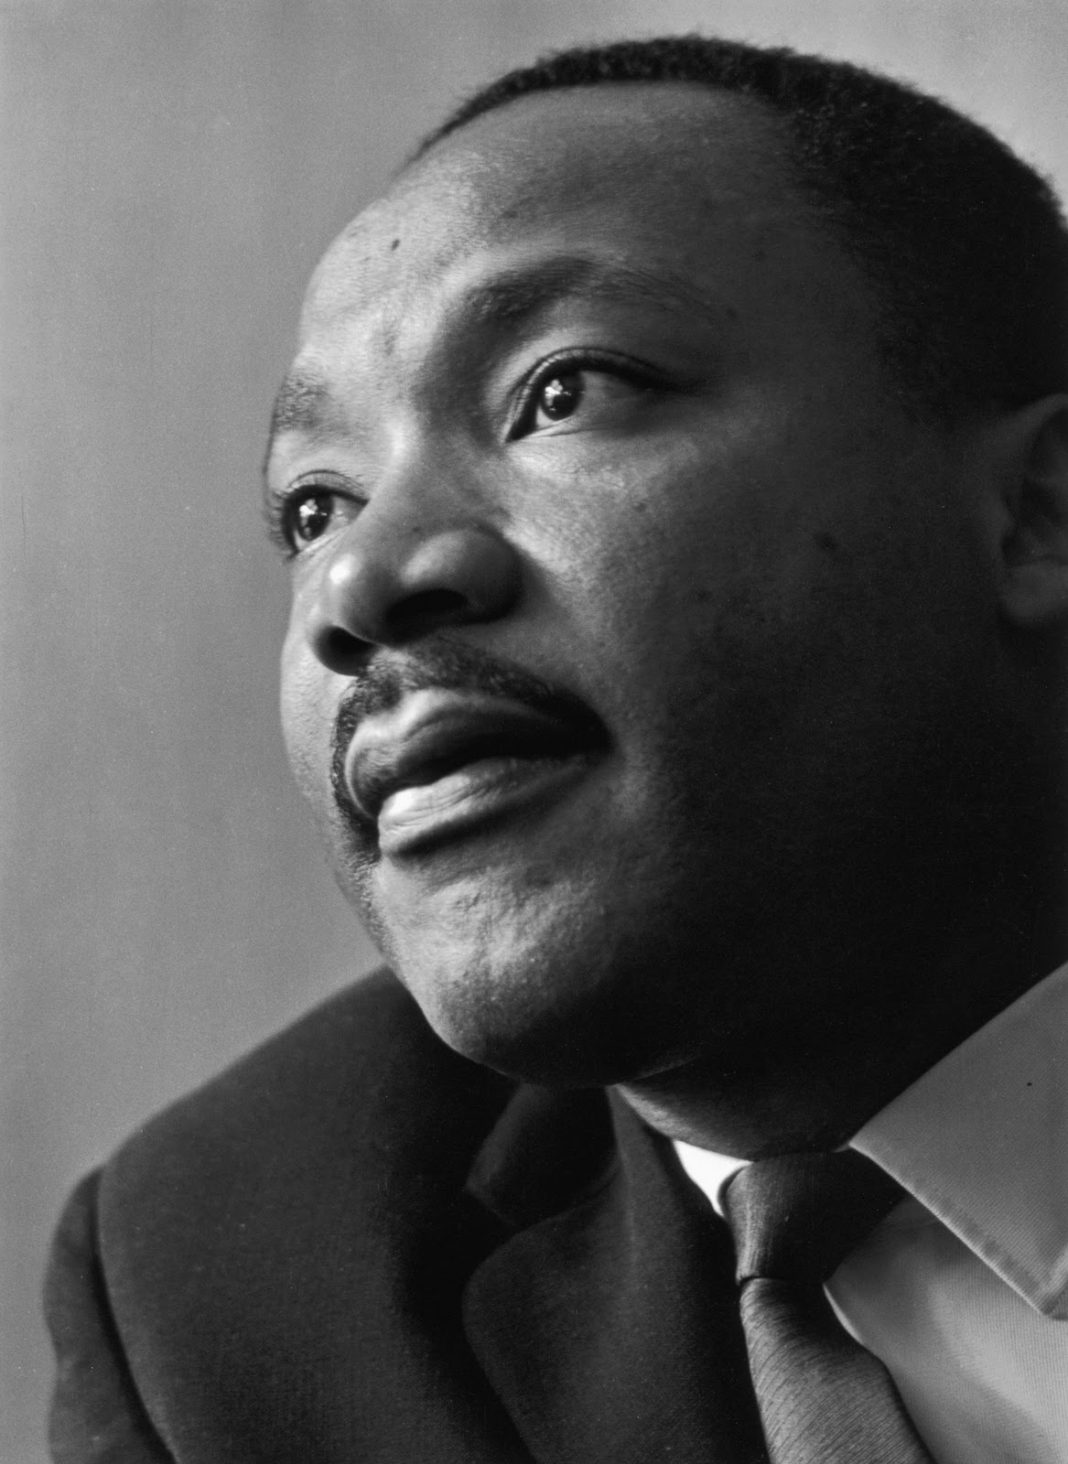 La littérature afro-américaine 50 ans après Luther King